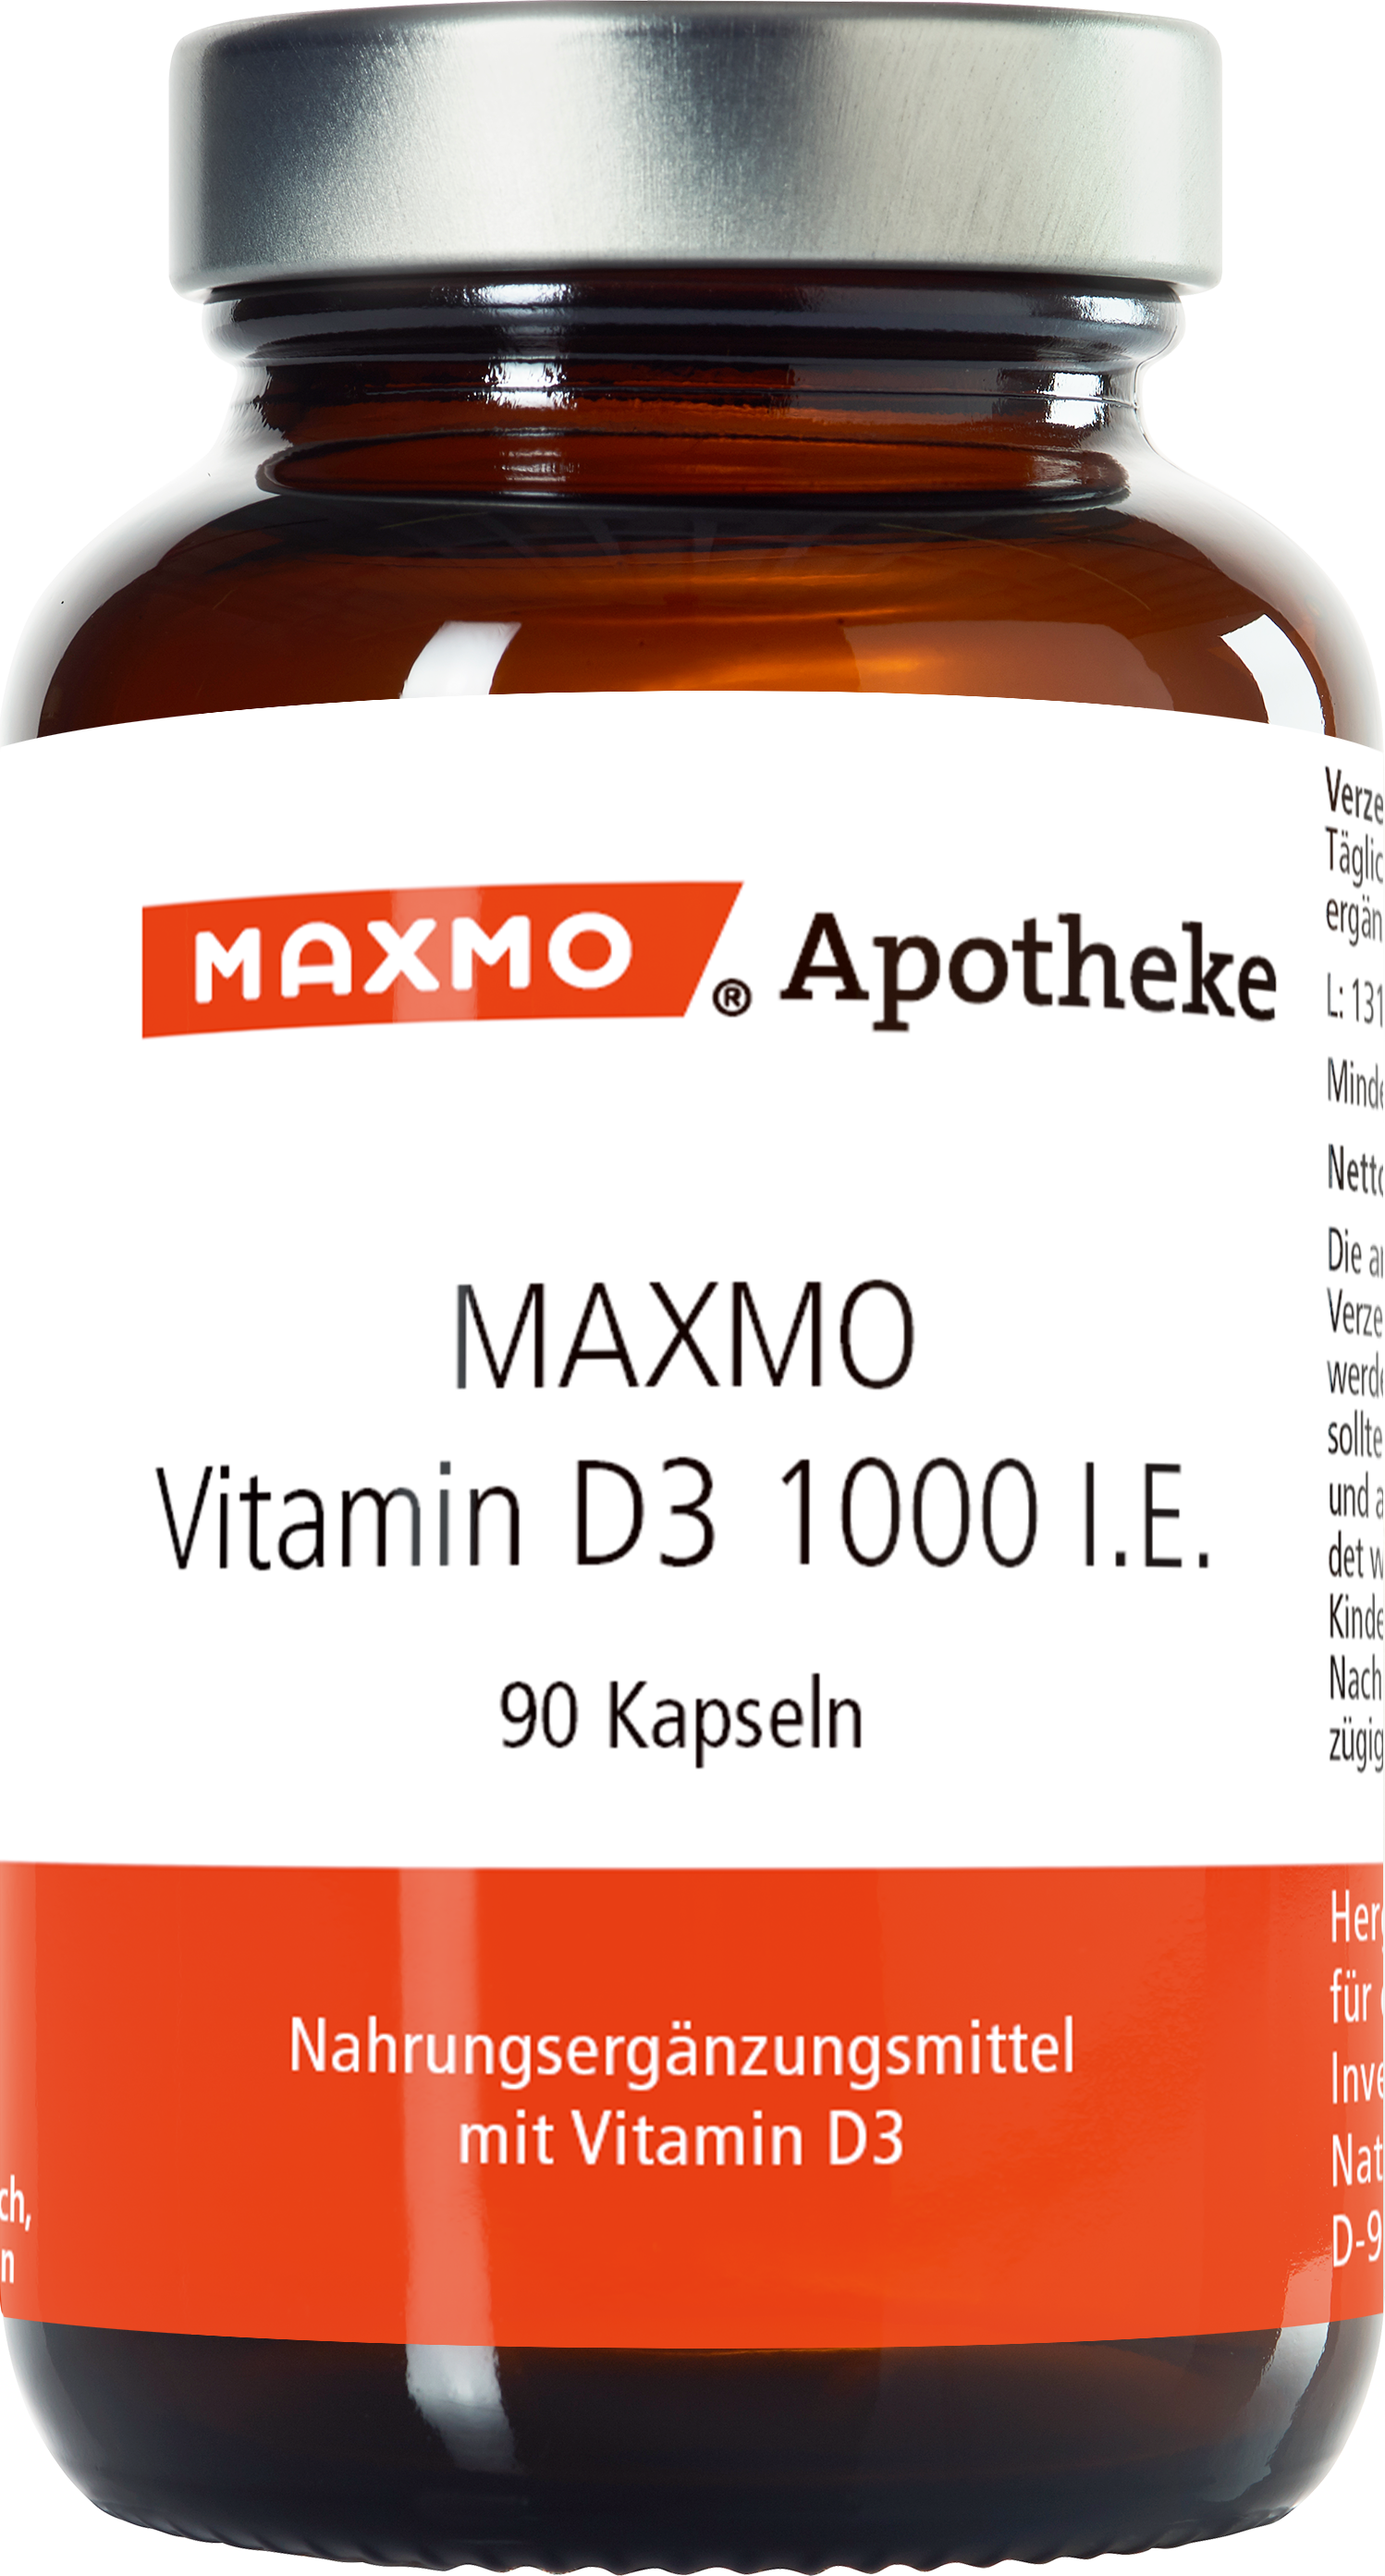 MAXMO Vitamin D3 1000 I.E. Kapseln